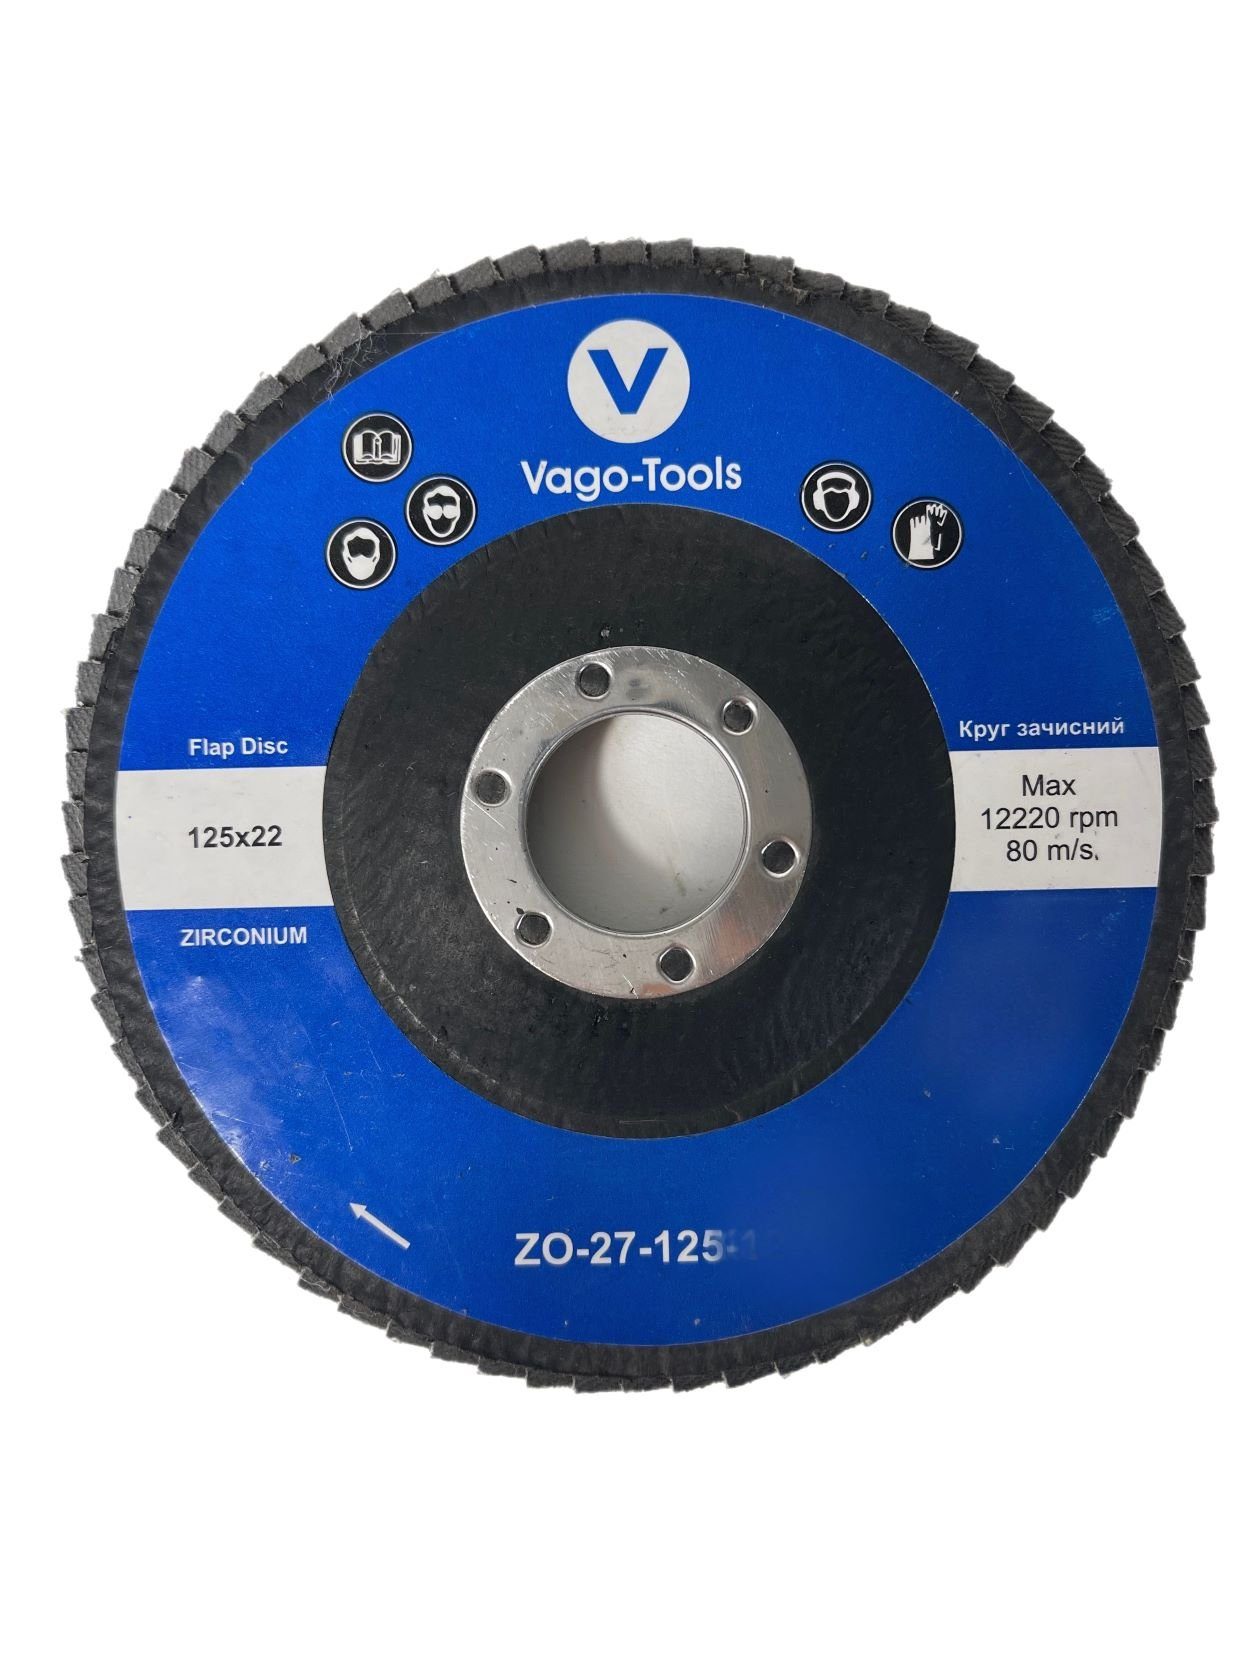 VaGo-Tools Schleifscheibe Fächerschleifscheiben 125mm P100 flach Blau 10x, (Packung) | Schleifblätter